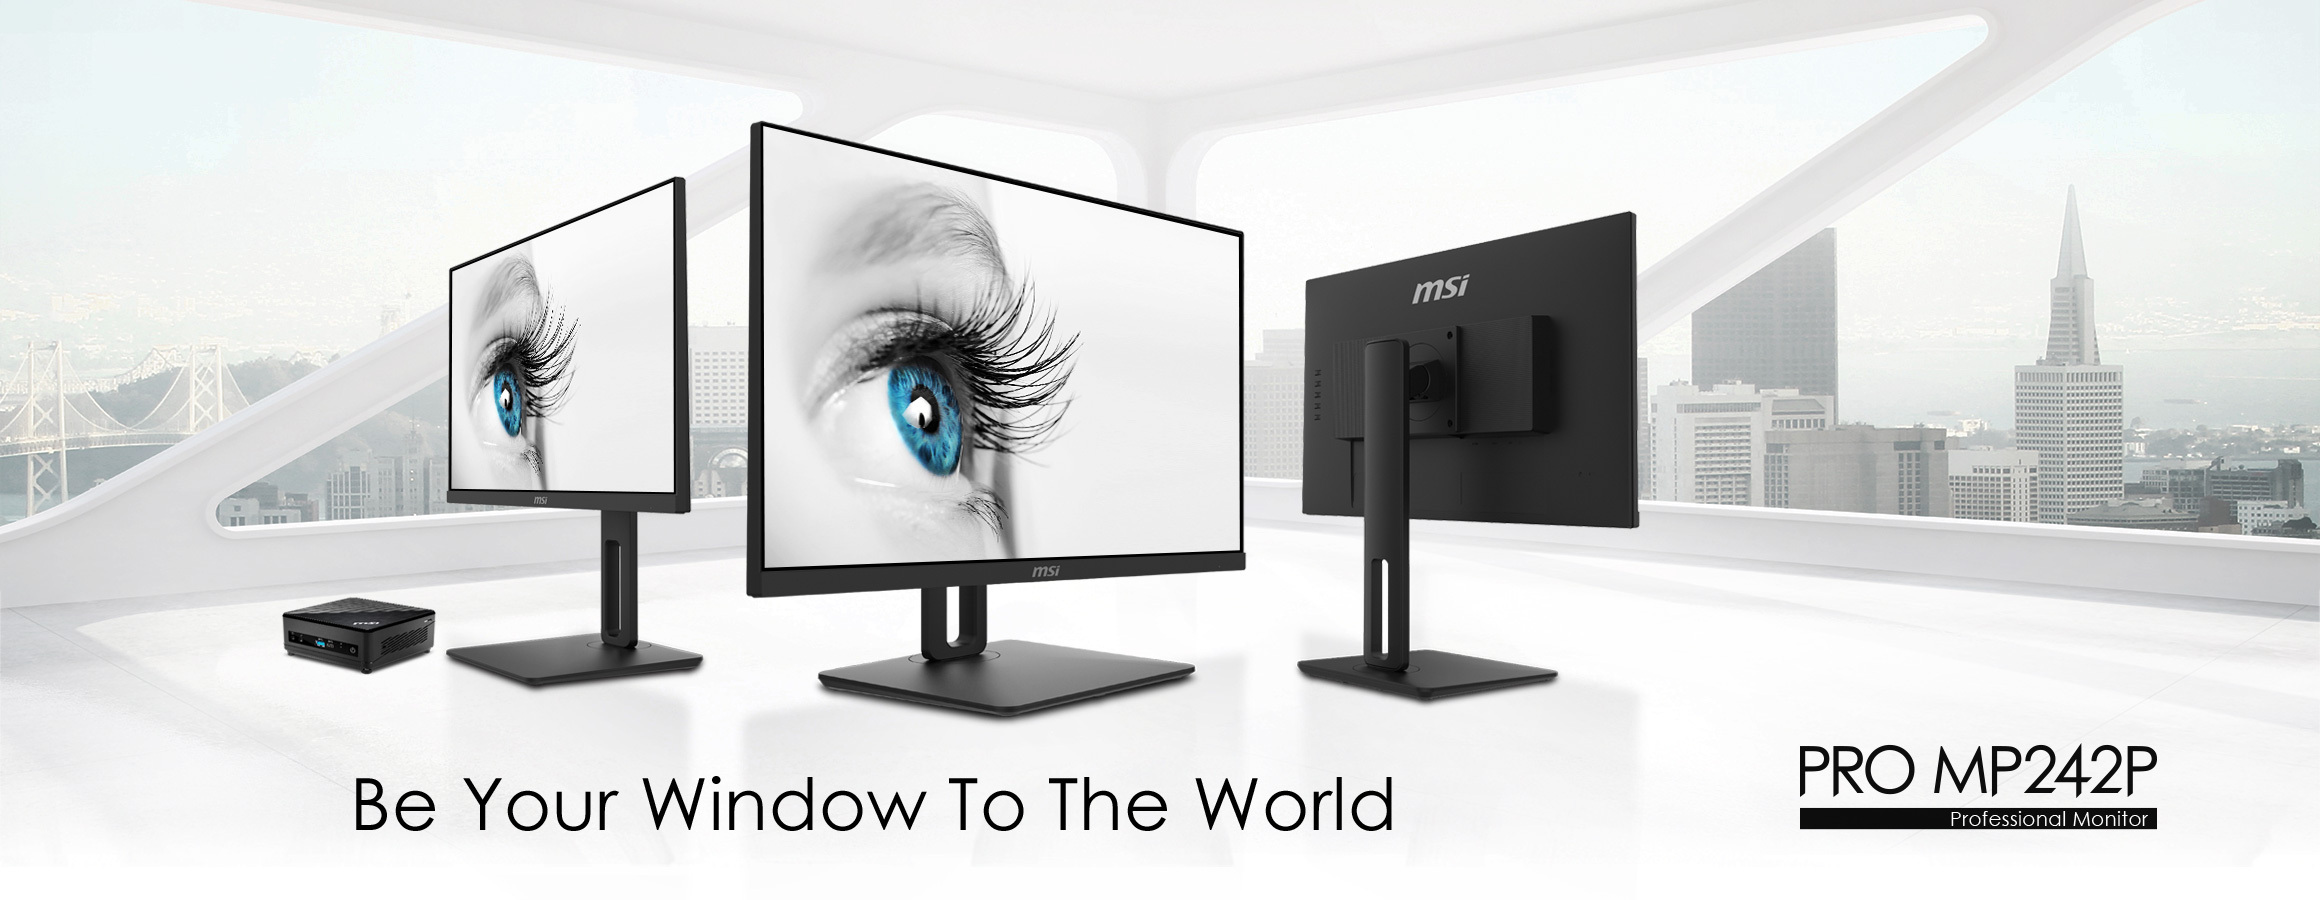 Image en noir et blanc de trois moniteurs MSI PRO MP242P, texte "Soyez votre fenêtre sur le monde"